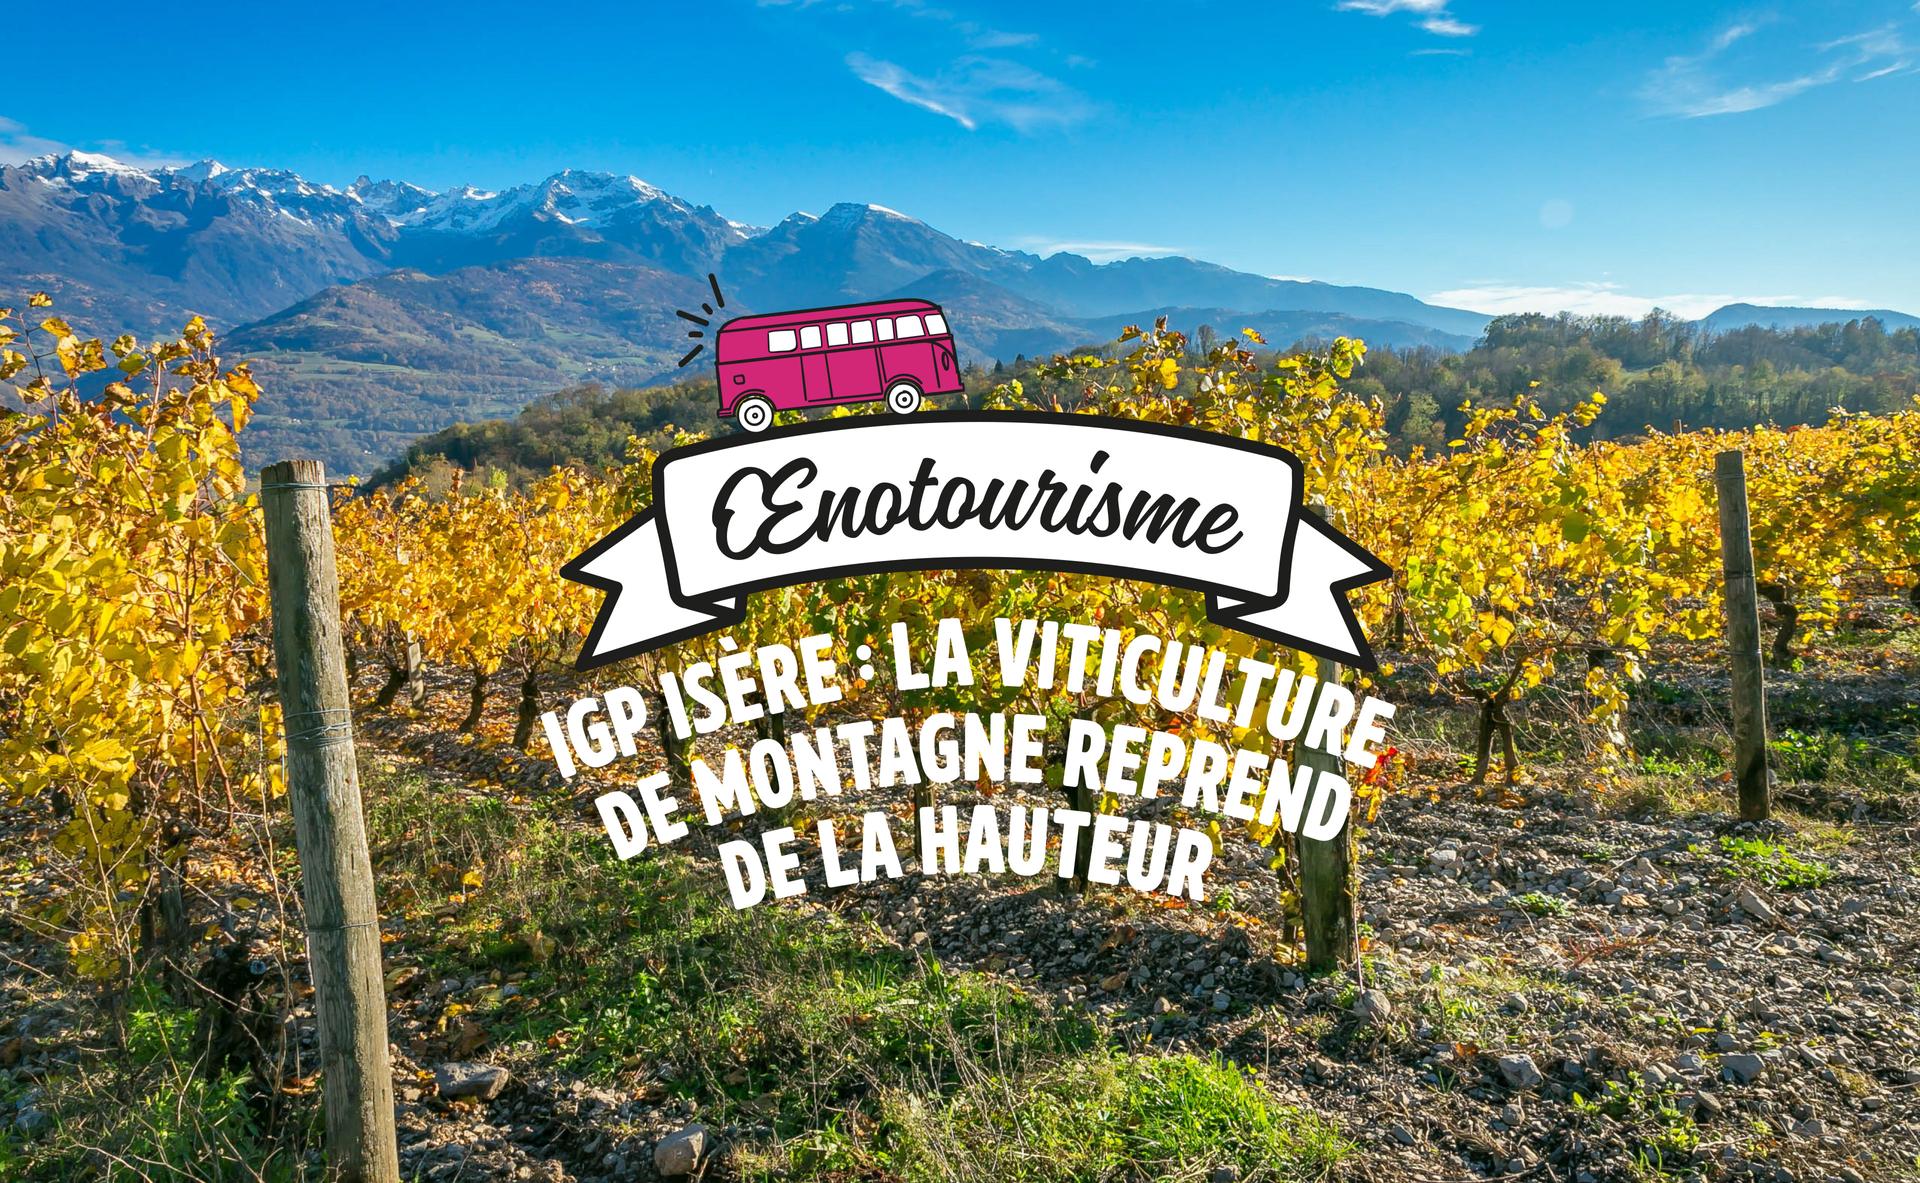 IGP Isère : la viticulture de montagne reprend de la hauteur